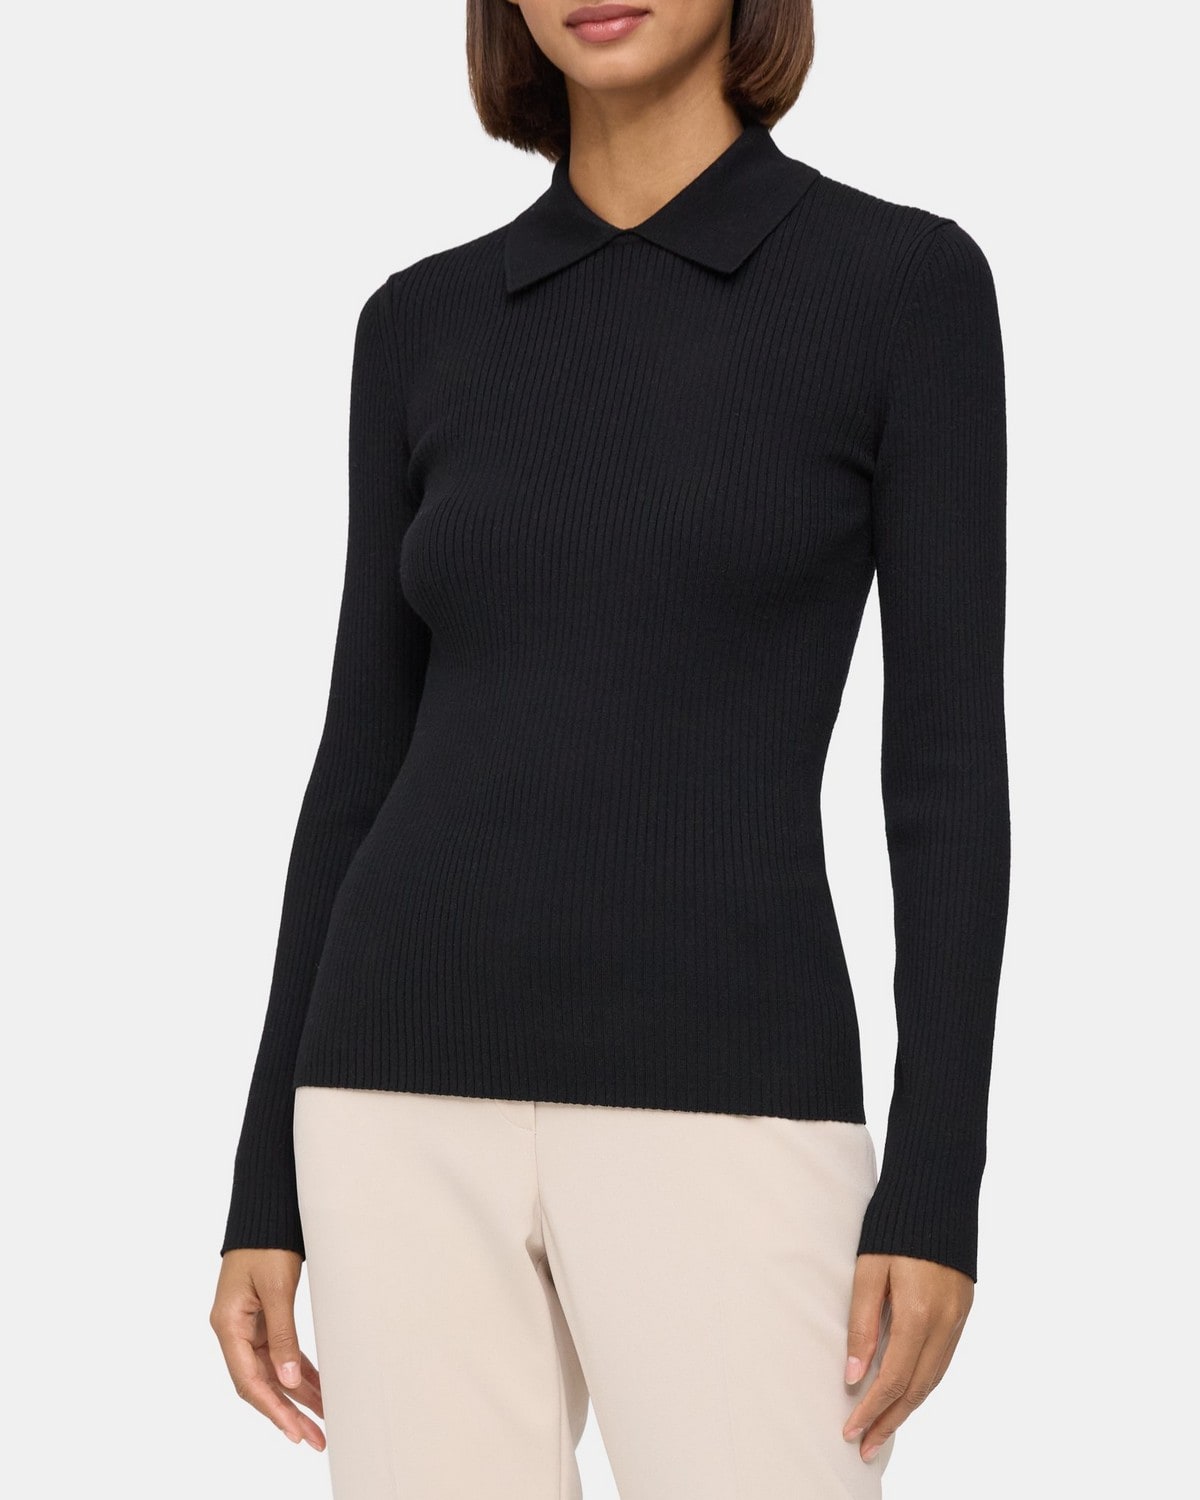 Collared Sweater in Fine Merino Wool